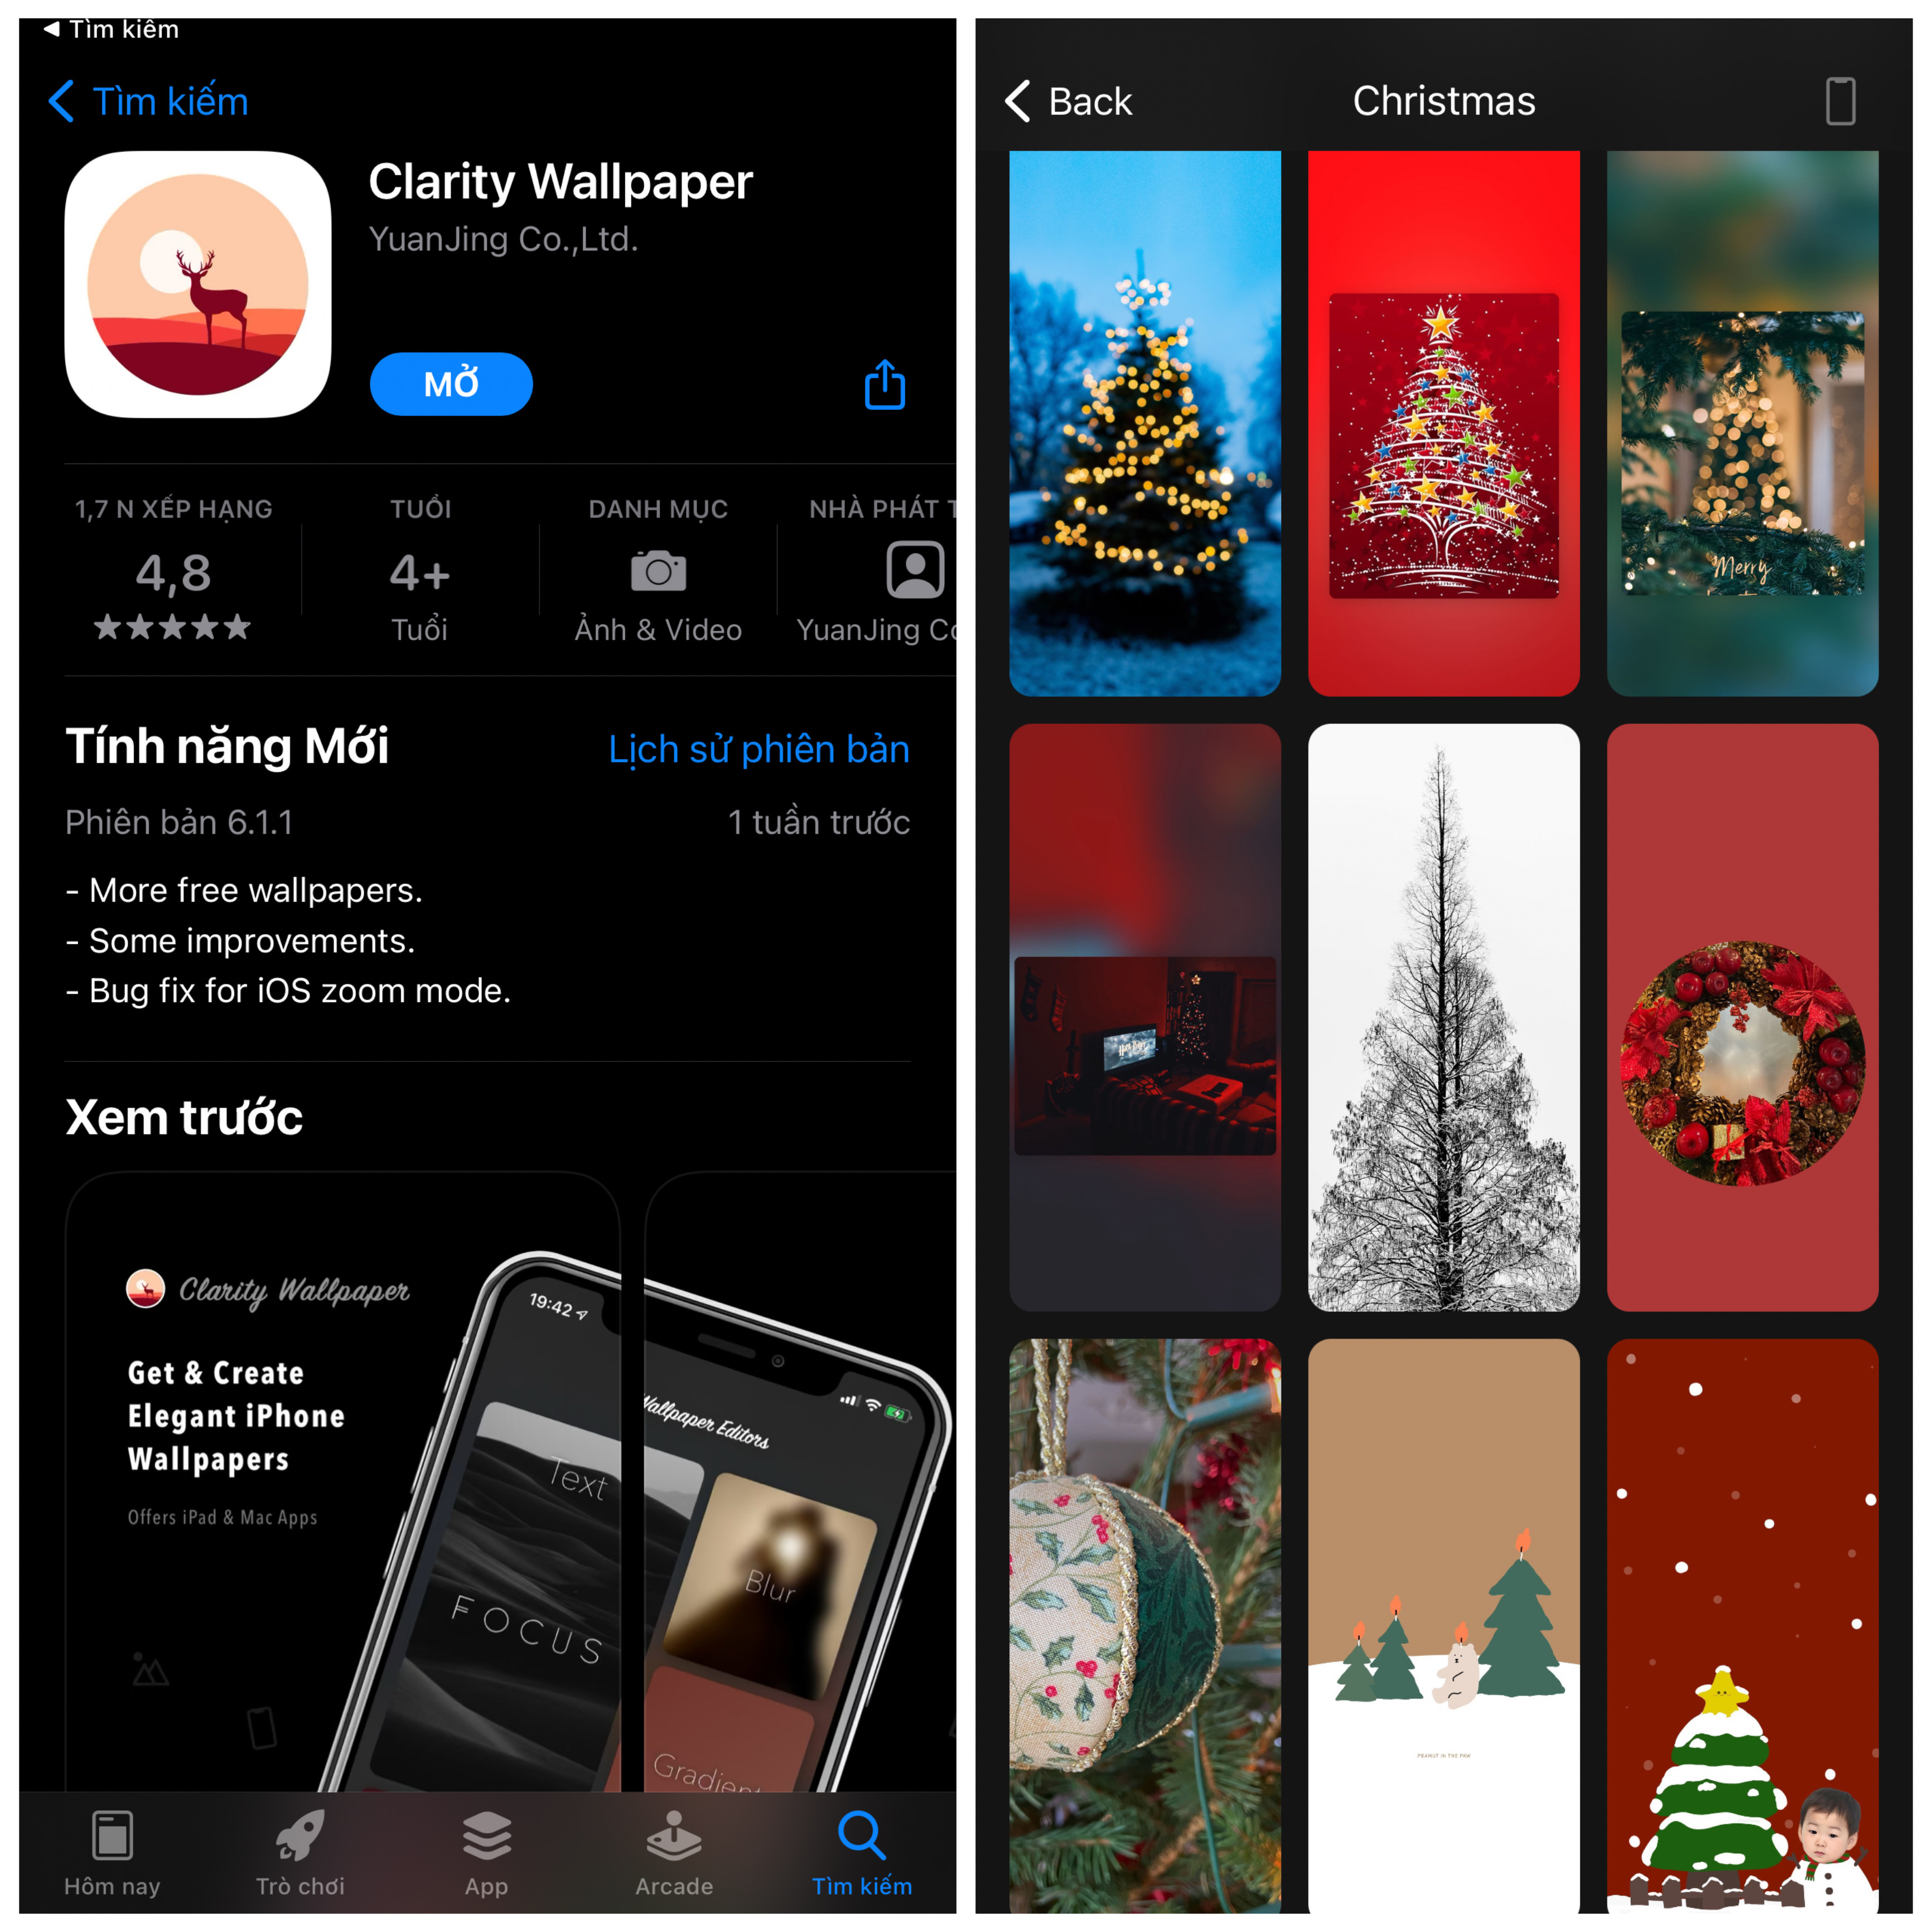 Mời tải về bộ hình nền Giáng Sinh 2018 cho iPhone và iPad  iThuThuat